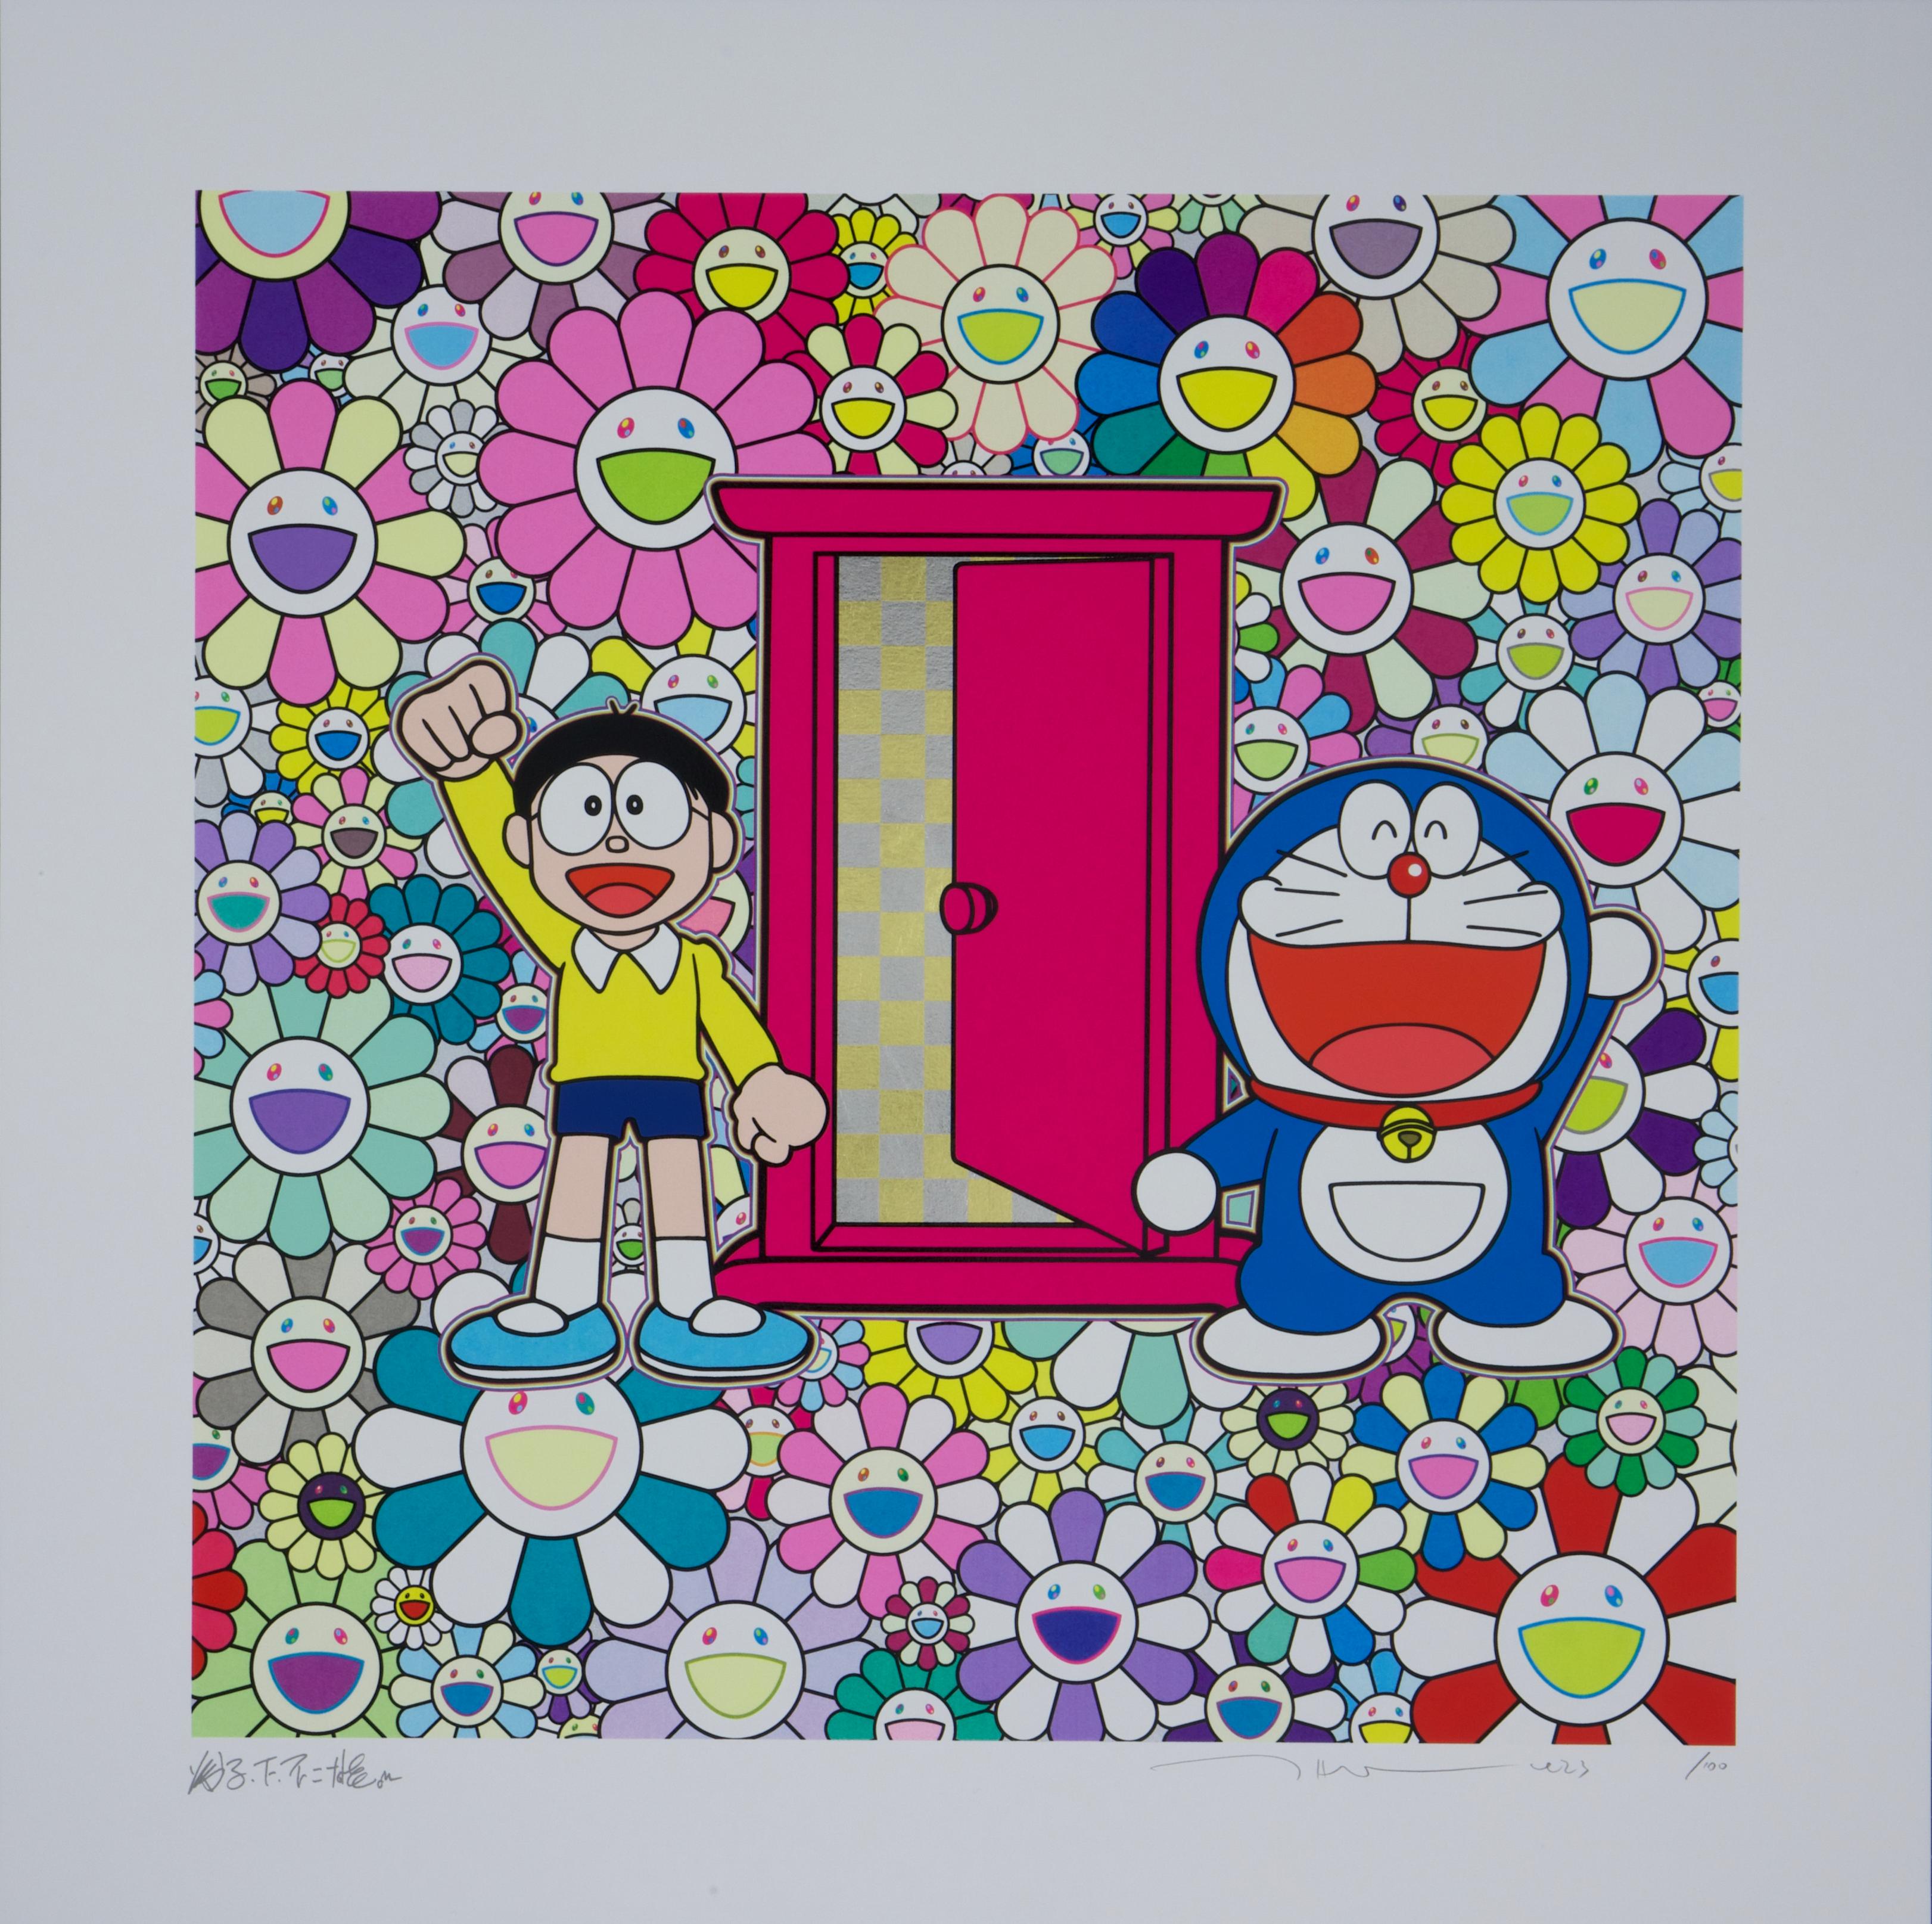 Nobita and Doraemon Amidst the Flowers (Doraemon, Murakami, Gold, Platinum) - Print by Takashi Murakami